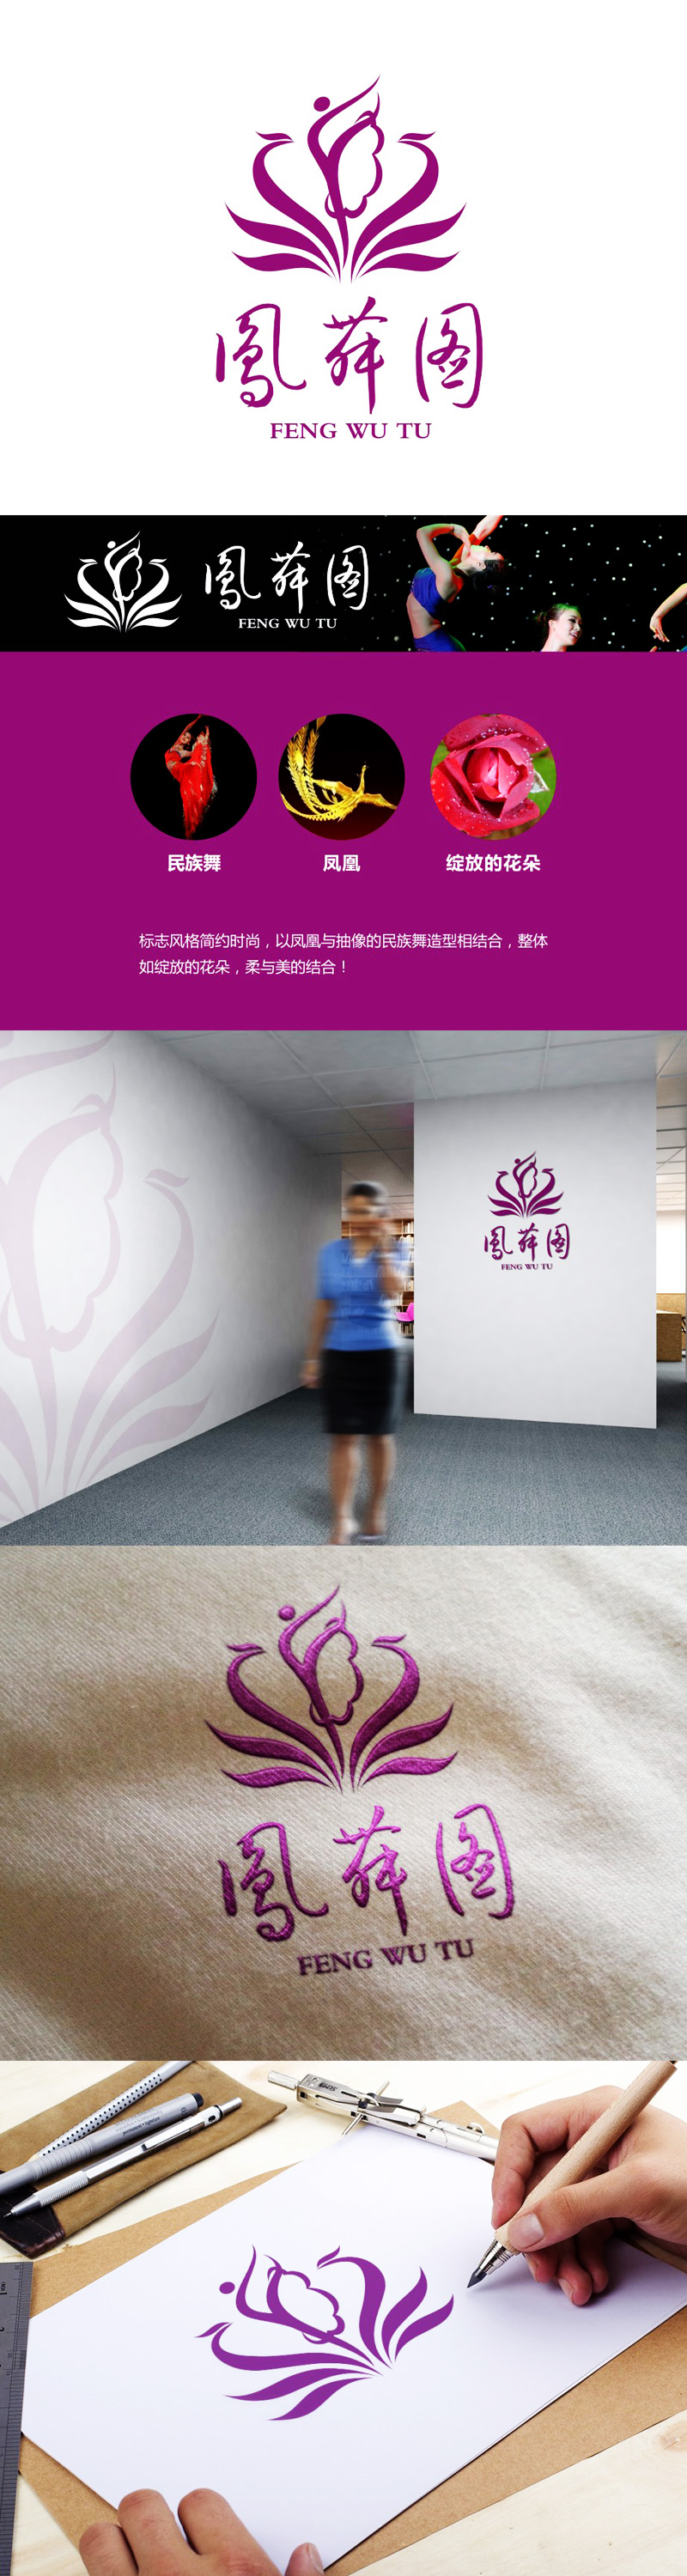 谭家强的深圳市凤舞图舞蹈文化艺术培训有限公司logo设计